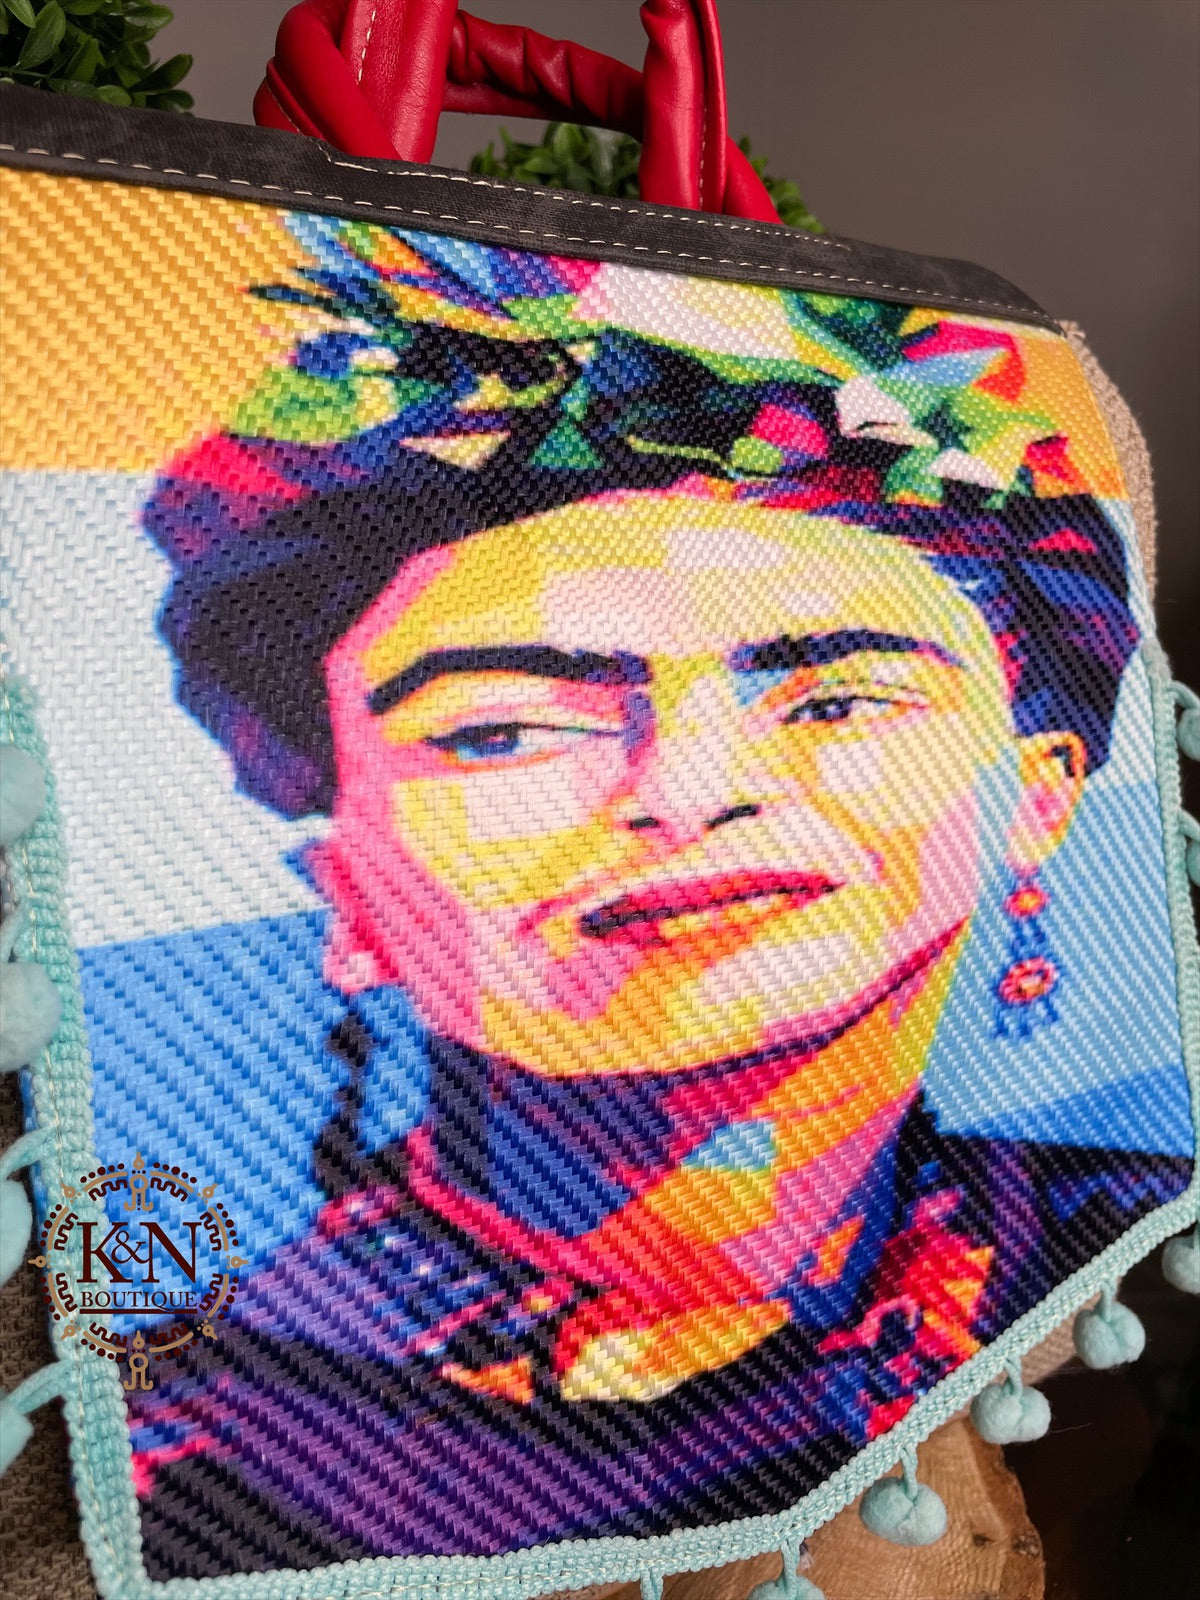 Frida Backpack